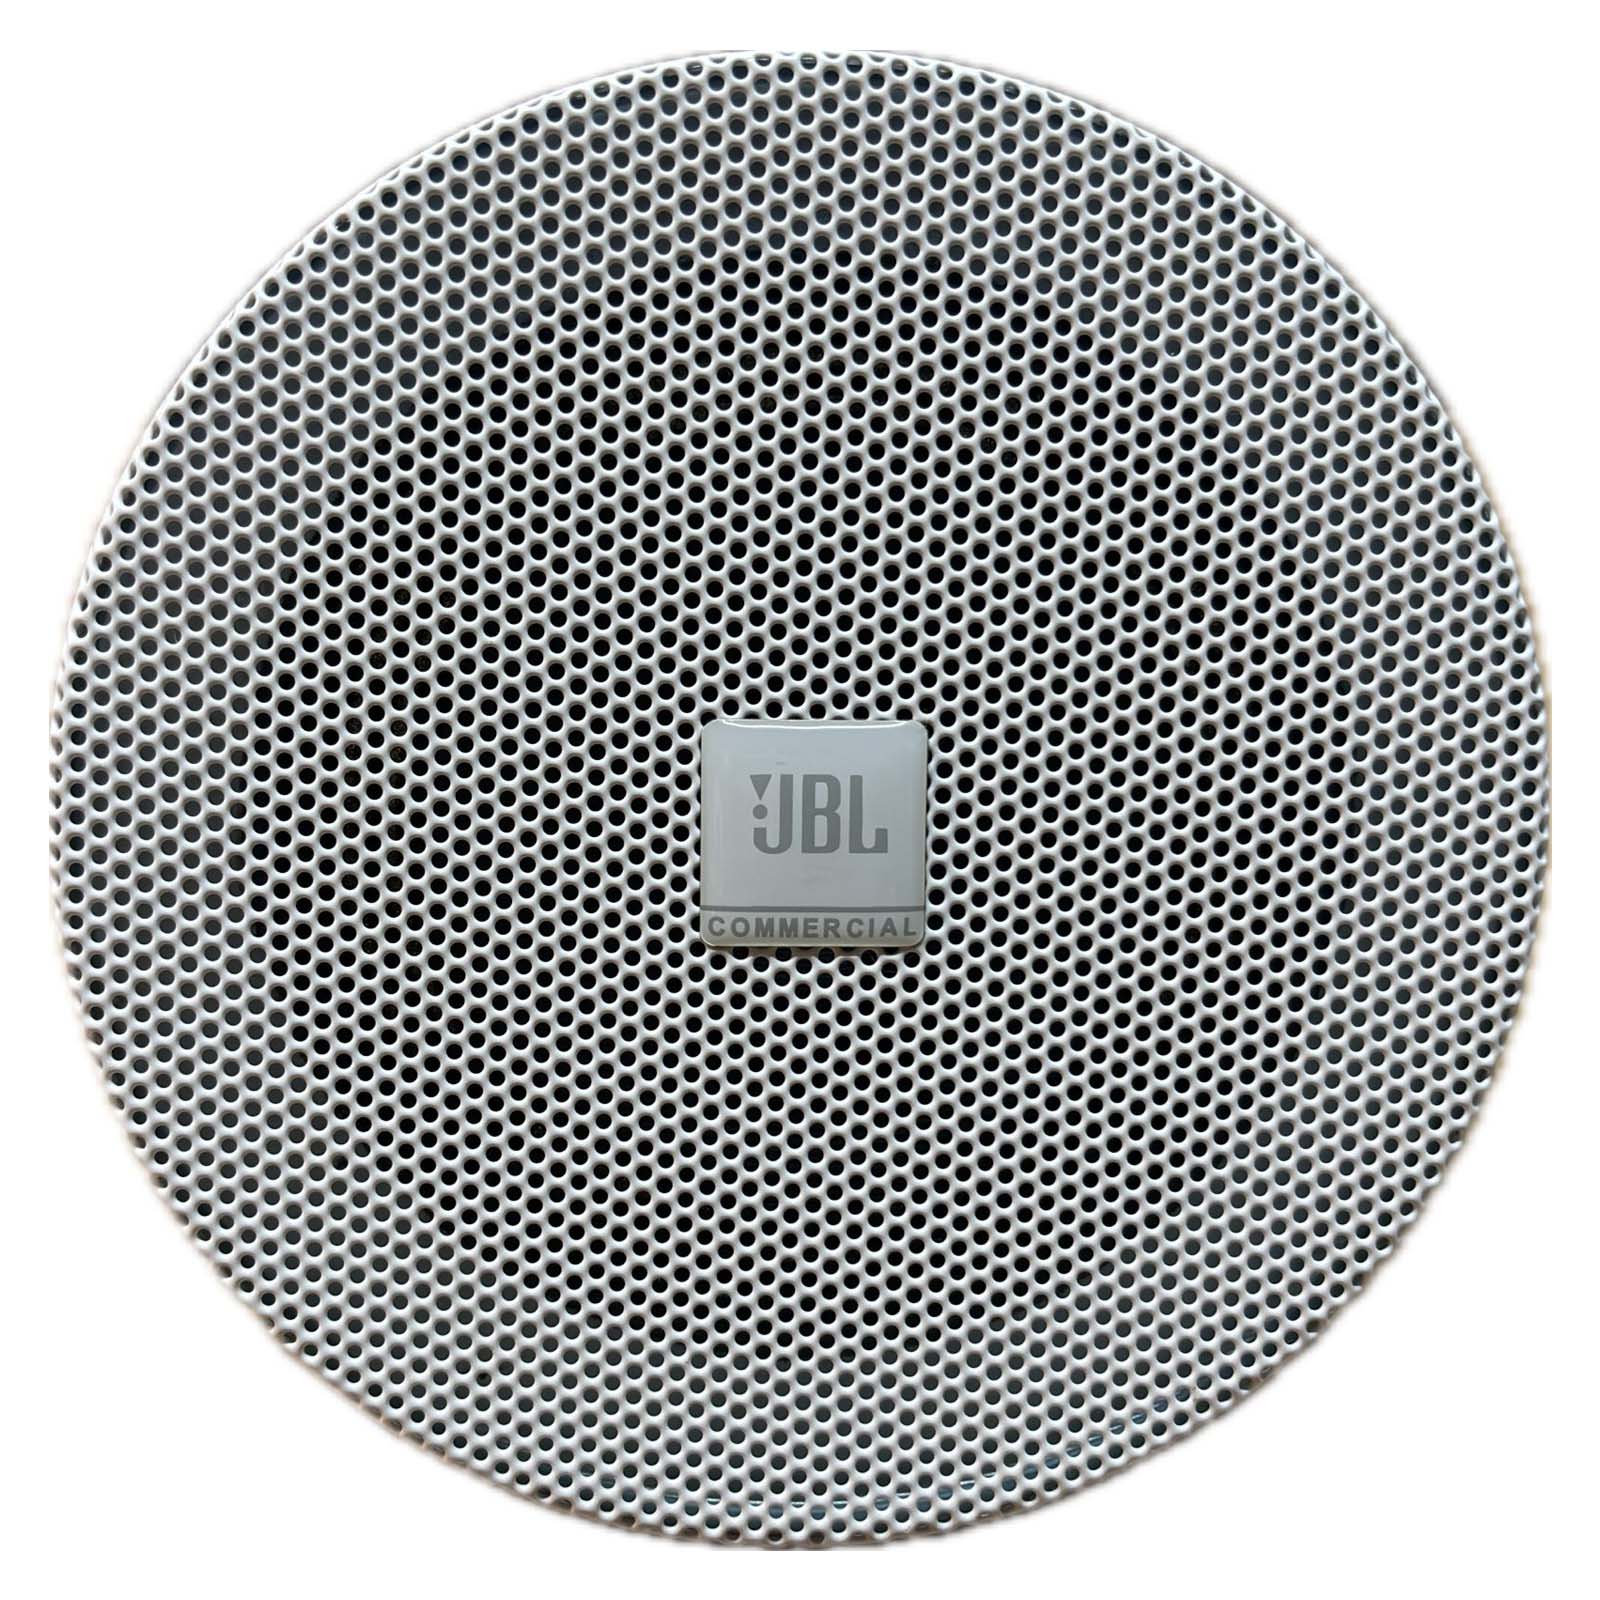 JBL ICS04MR 4-inch Rimless Ceiling Speaker